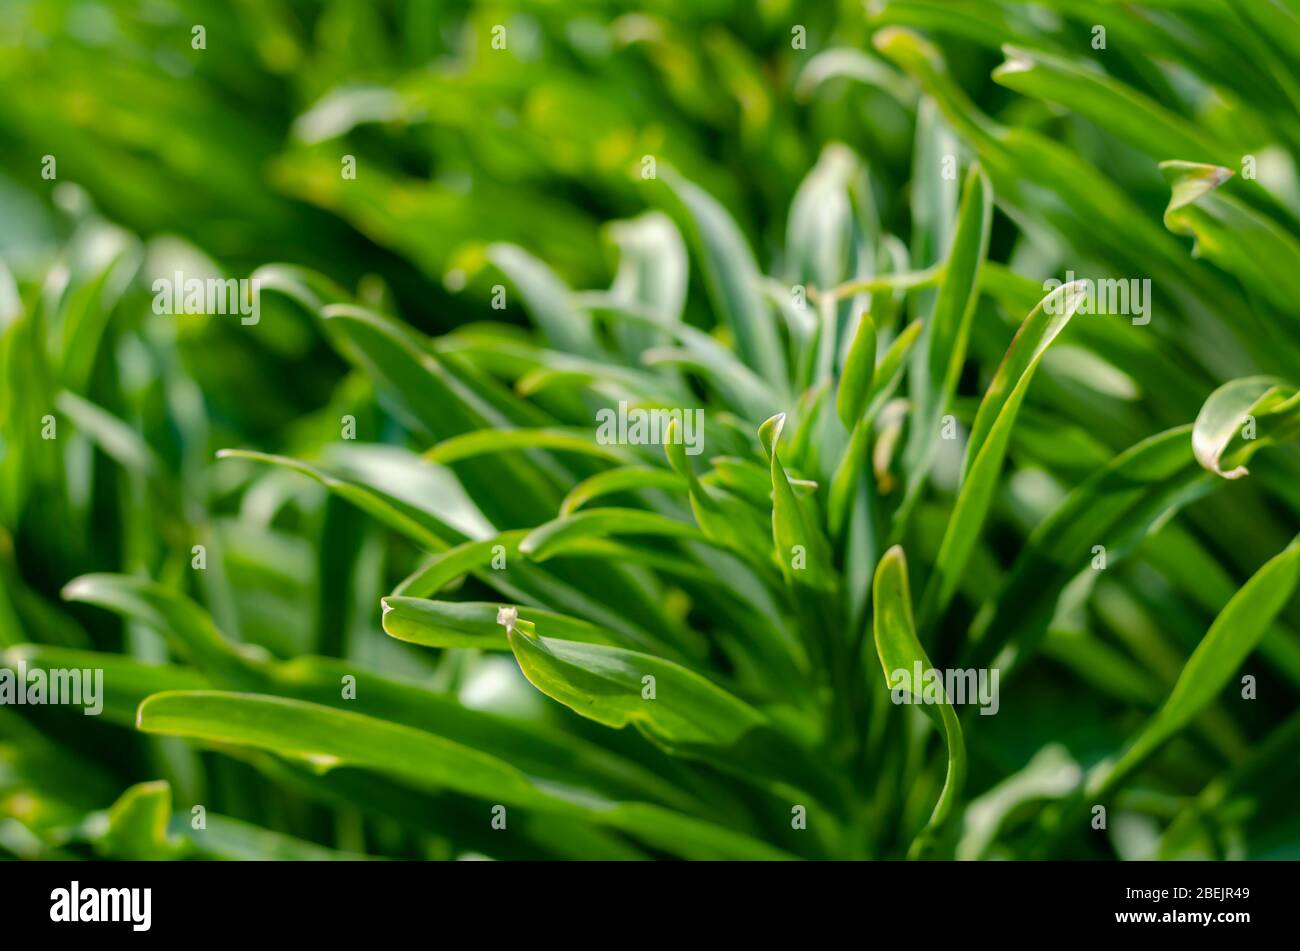 Lily lanceolate ou brindle (Llium lancifolium). Feuilles vertes d'une brousse d'un tigre sans fleurs. Poutres apparentes sur feuilles vertes. Vue latérale. Sélection Banque D'Images